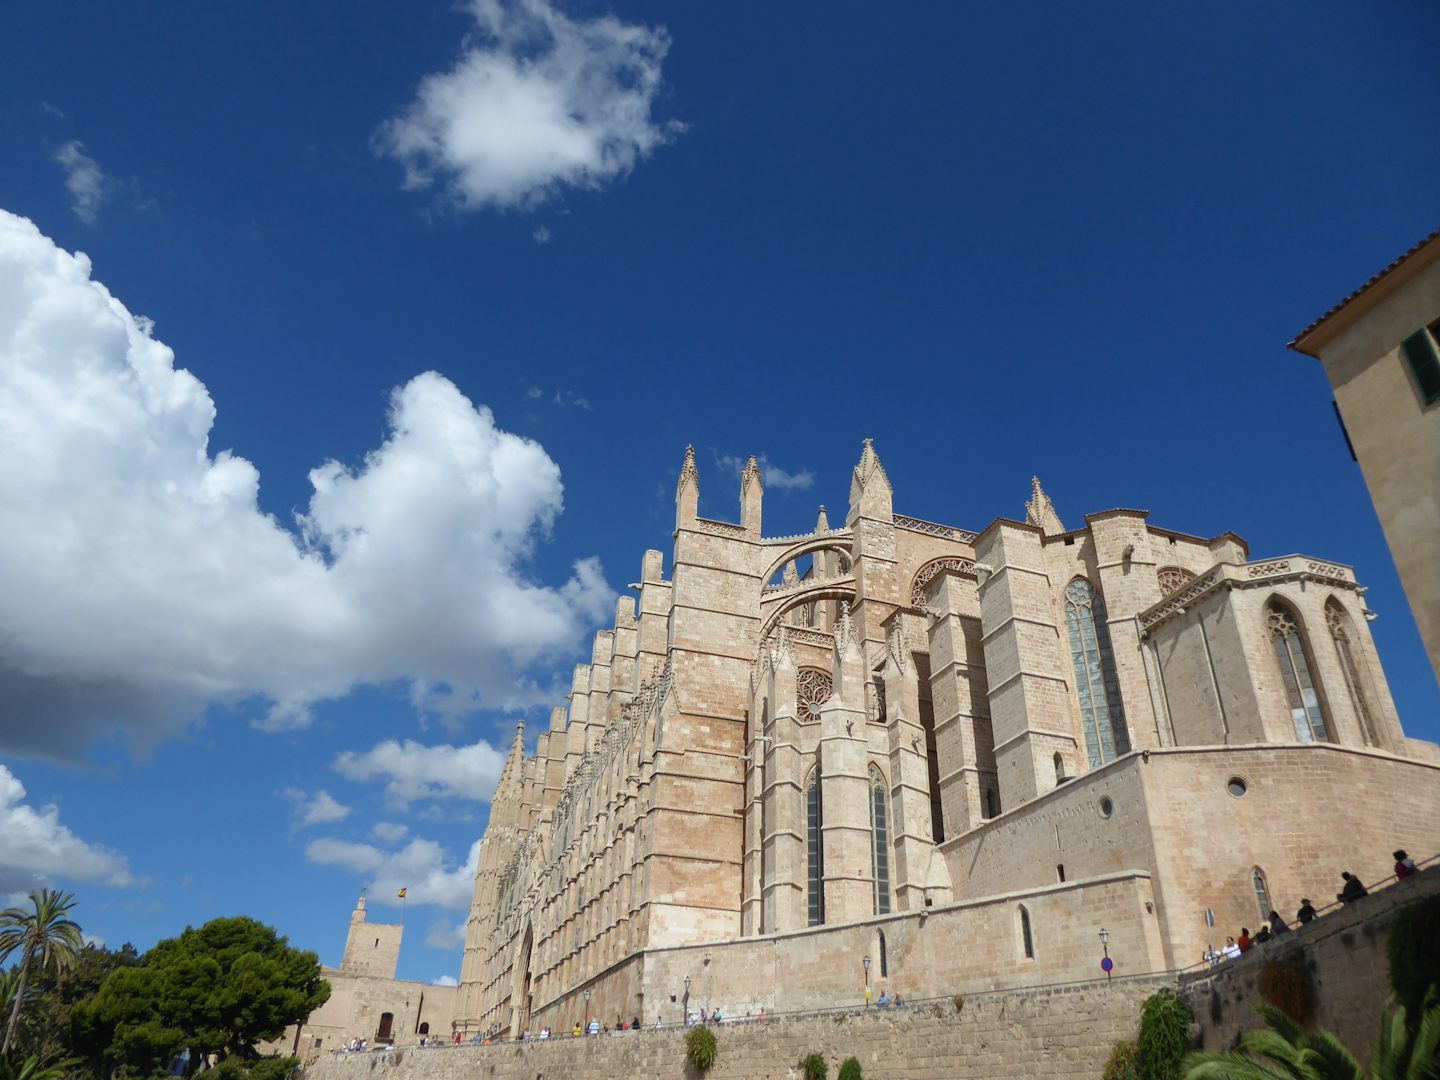 Palma de Mallorca, Spain: Catedral de Mallorca